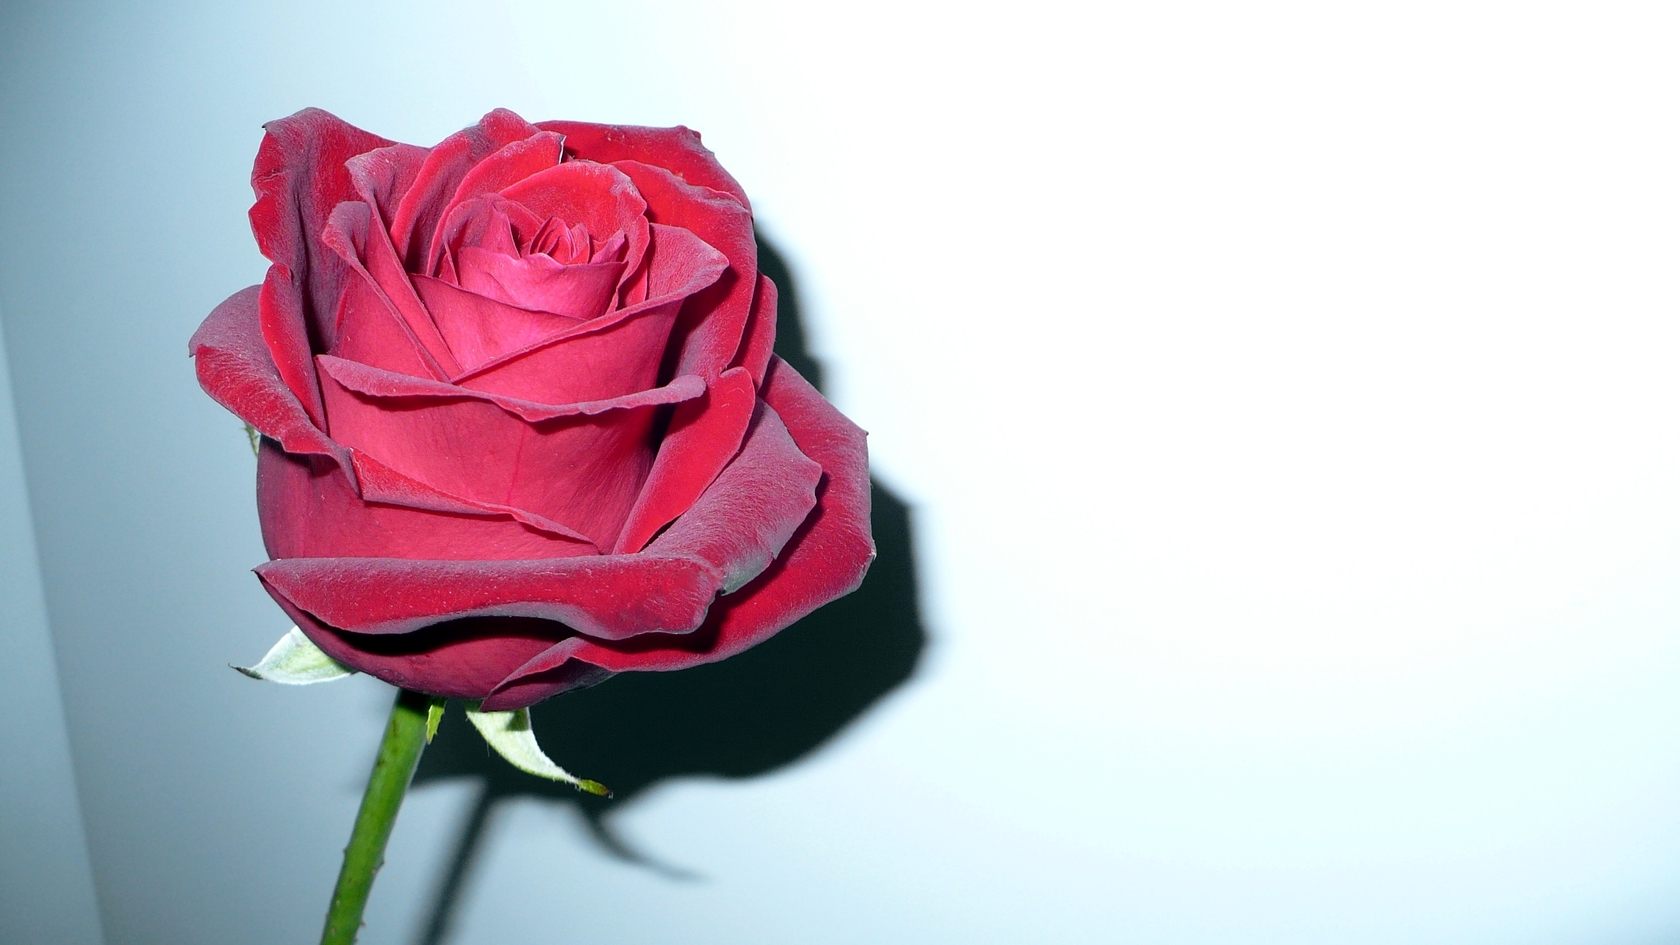  Цветы rose, red, flower, роза, красный, цветок картинка, обои рабочий стол